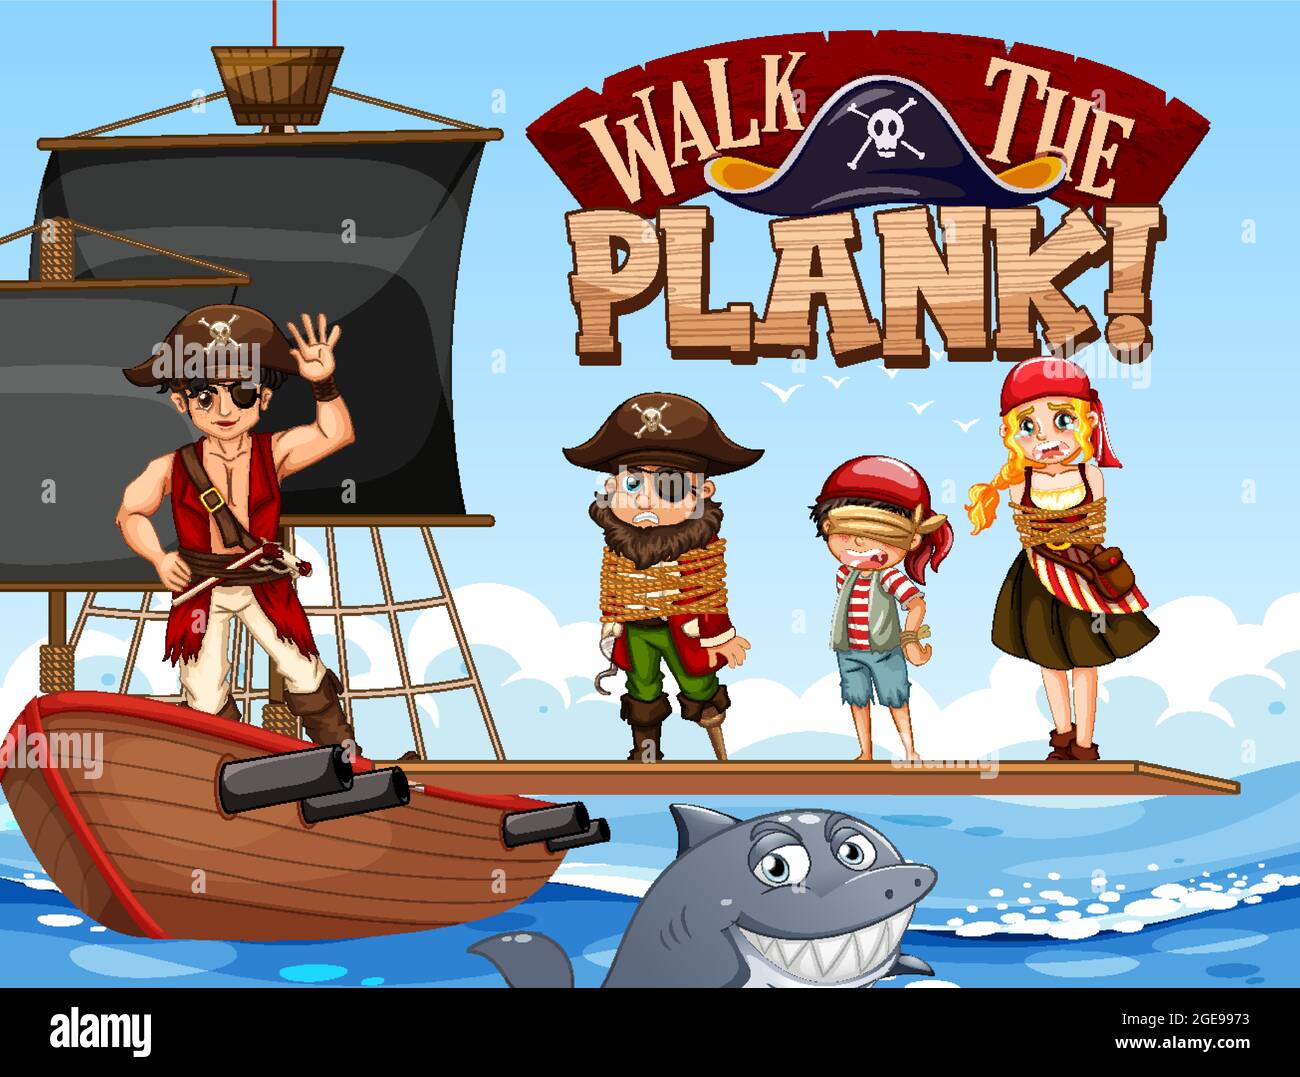 Viele Piraten Cartoon-Figur auf dem Schiff mit Walk the Plank Schriftart Banner Illustration Stock Vektor